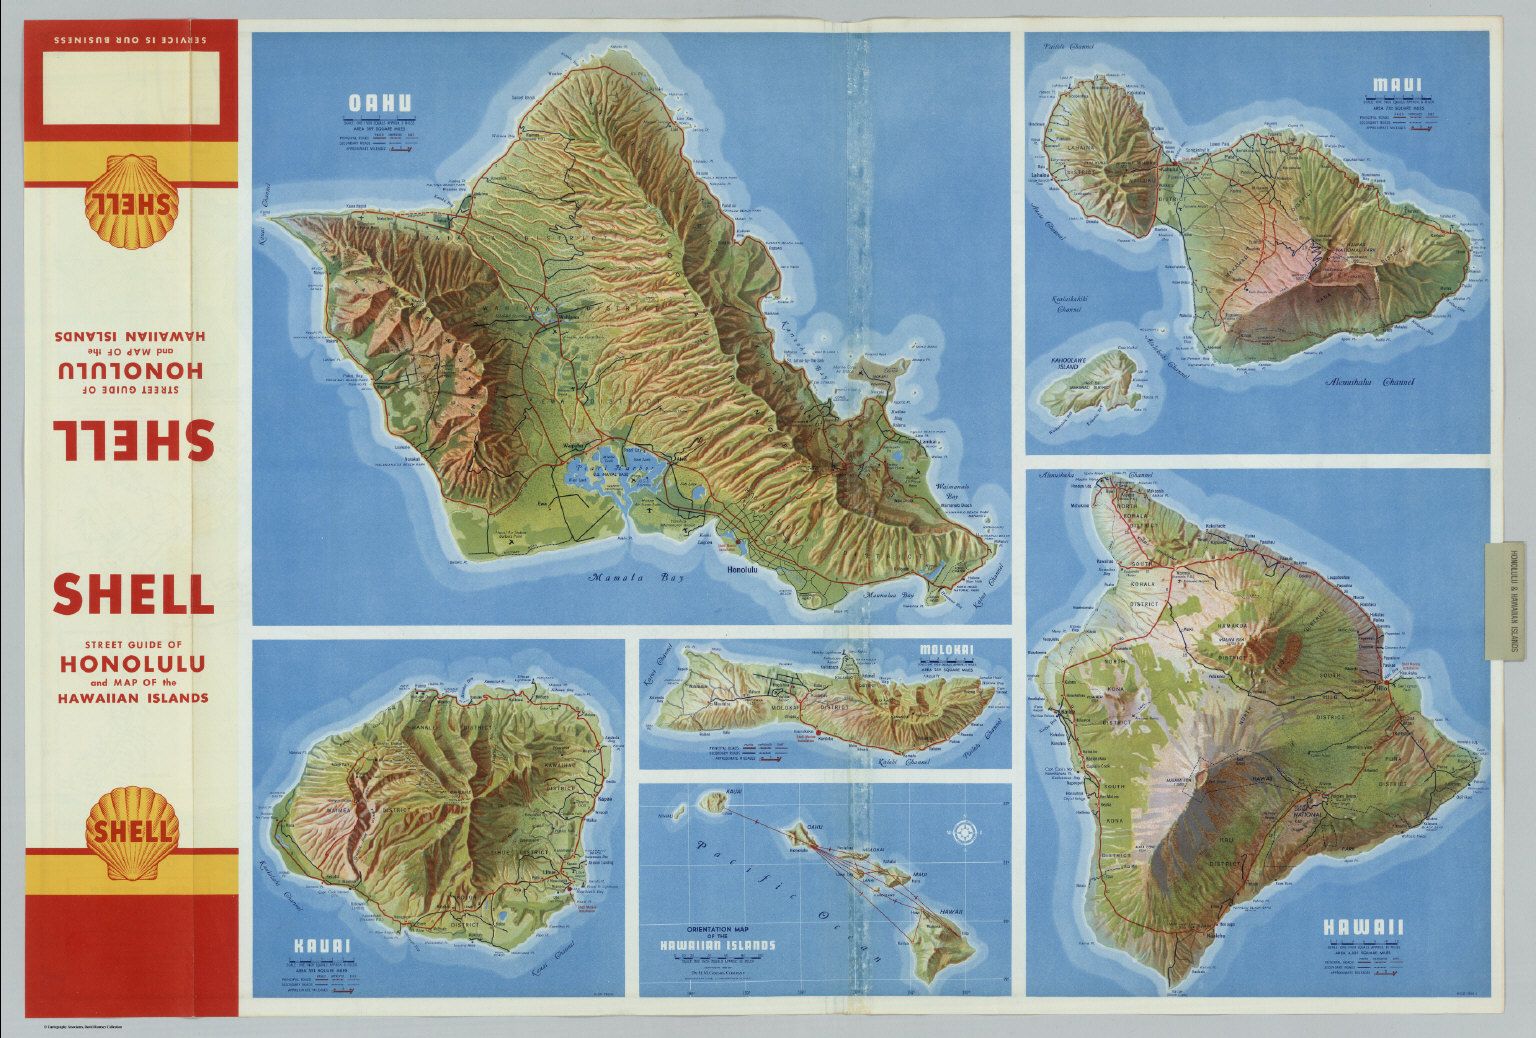 Oahu. Kauai. Maui. Molokai. Hawaii. Hawaiian Islands. - David Rumsey - Molokai Map Printable